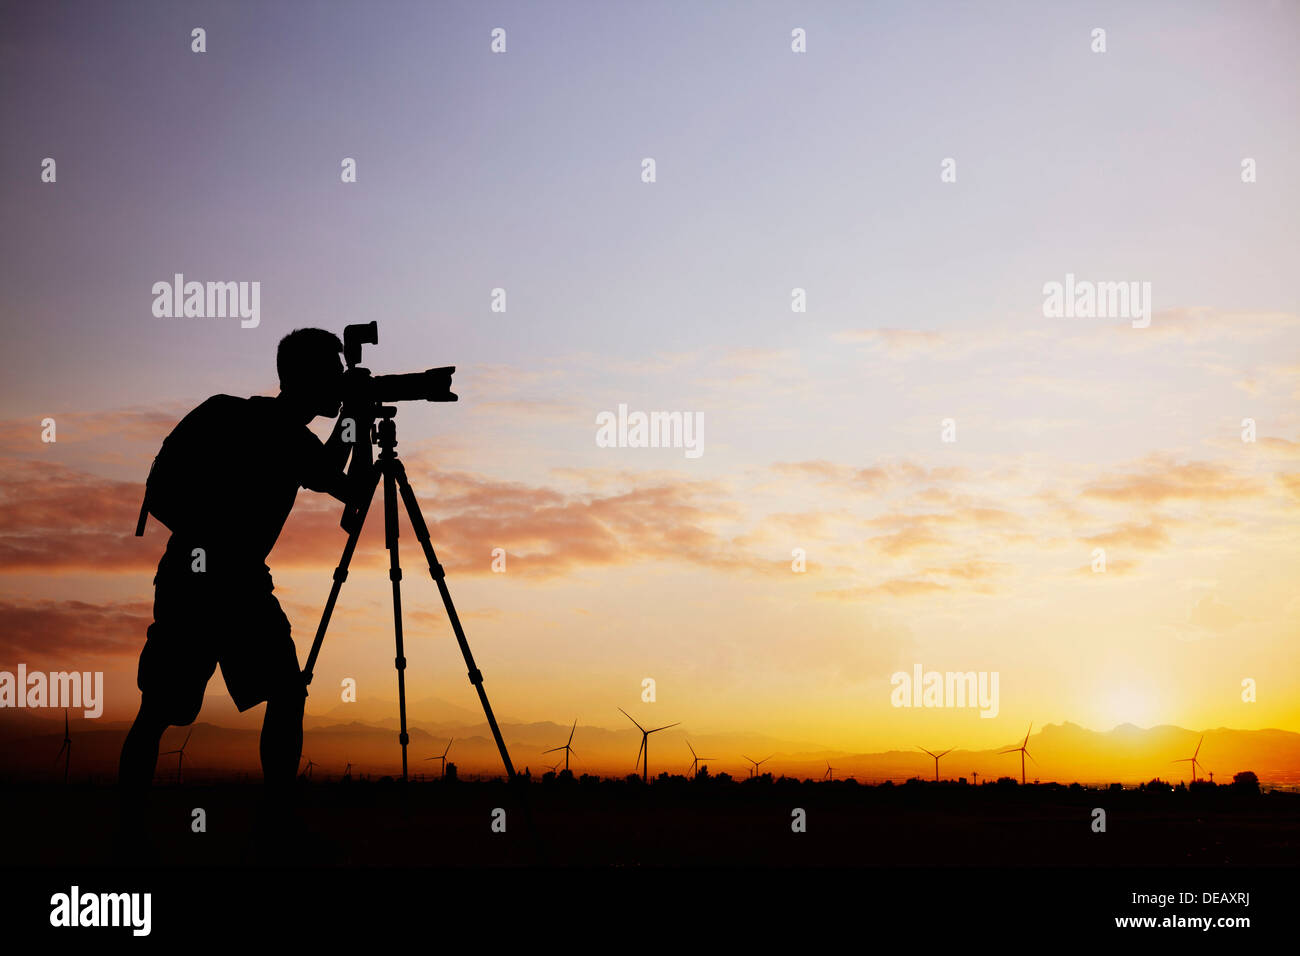 Silhouette of man prendre des photos avec son appareil photo au coucher du soleil avec un ciel dramatique Banque D'Images